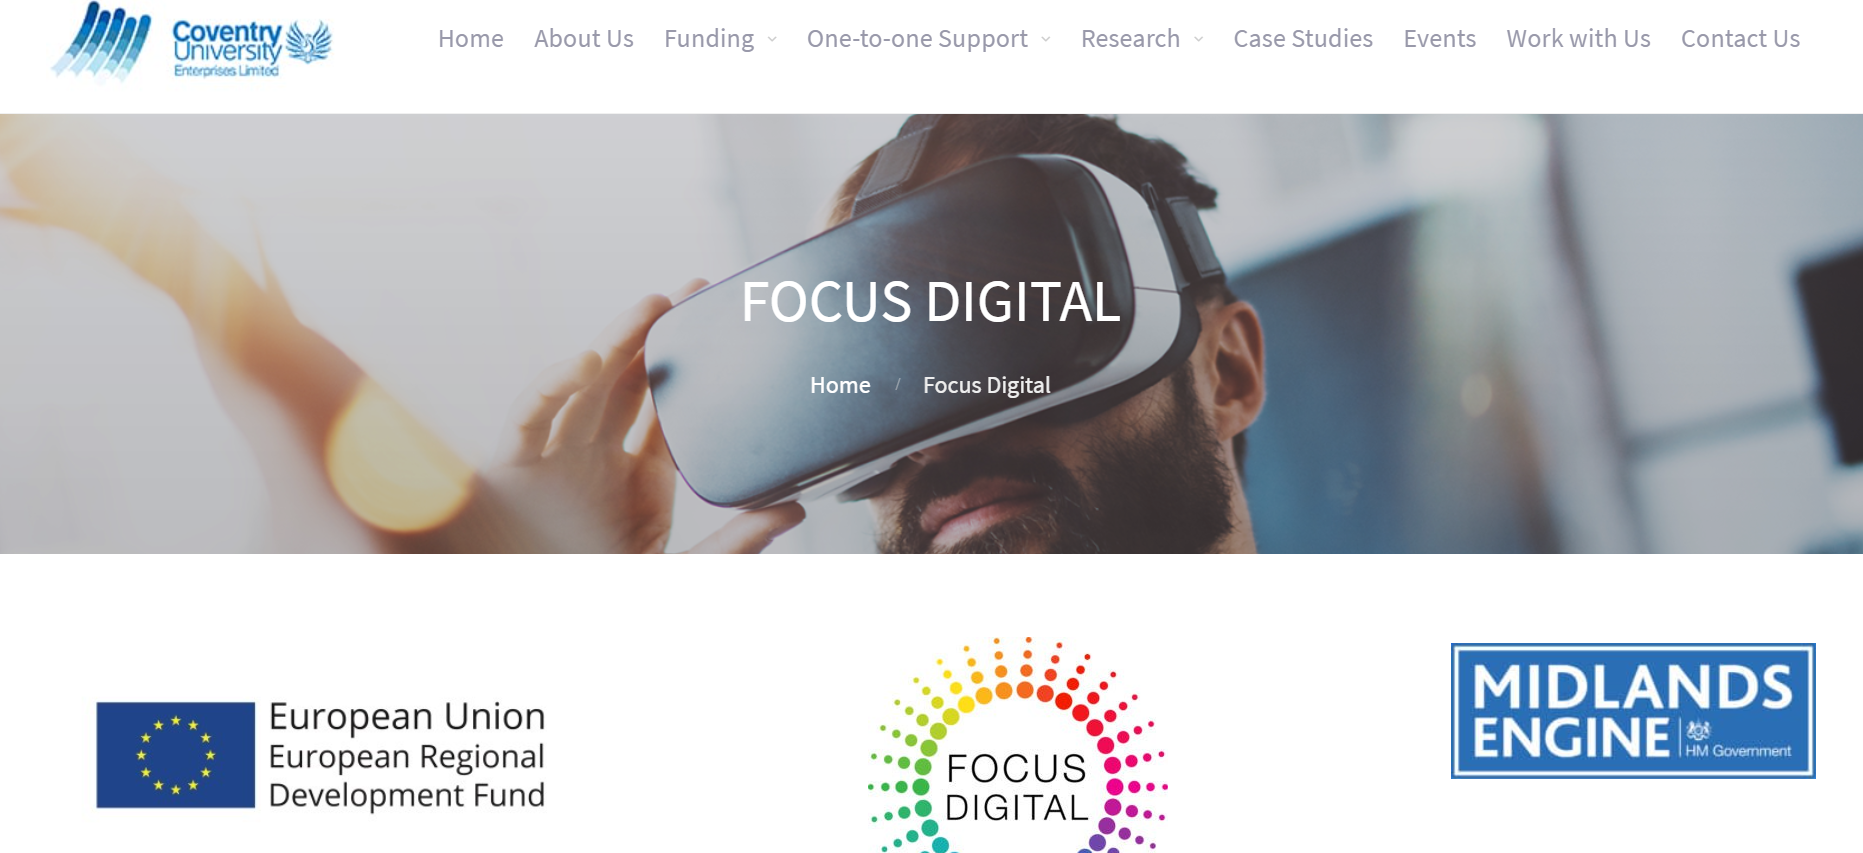 Focus digital